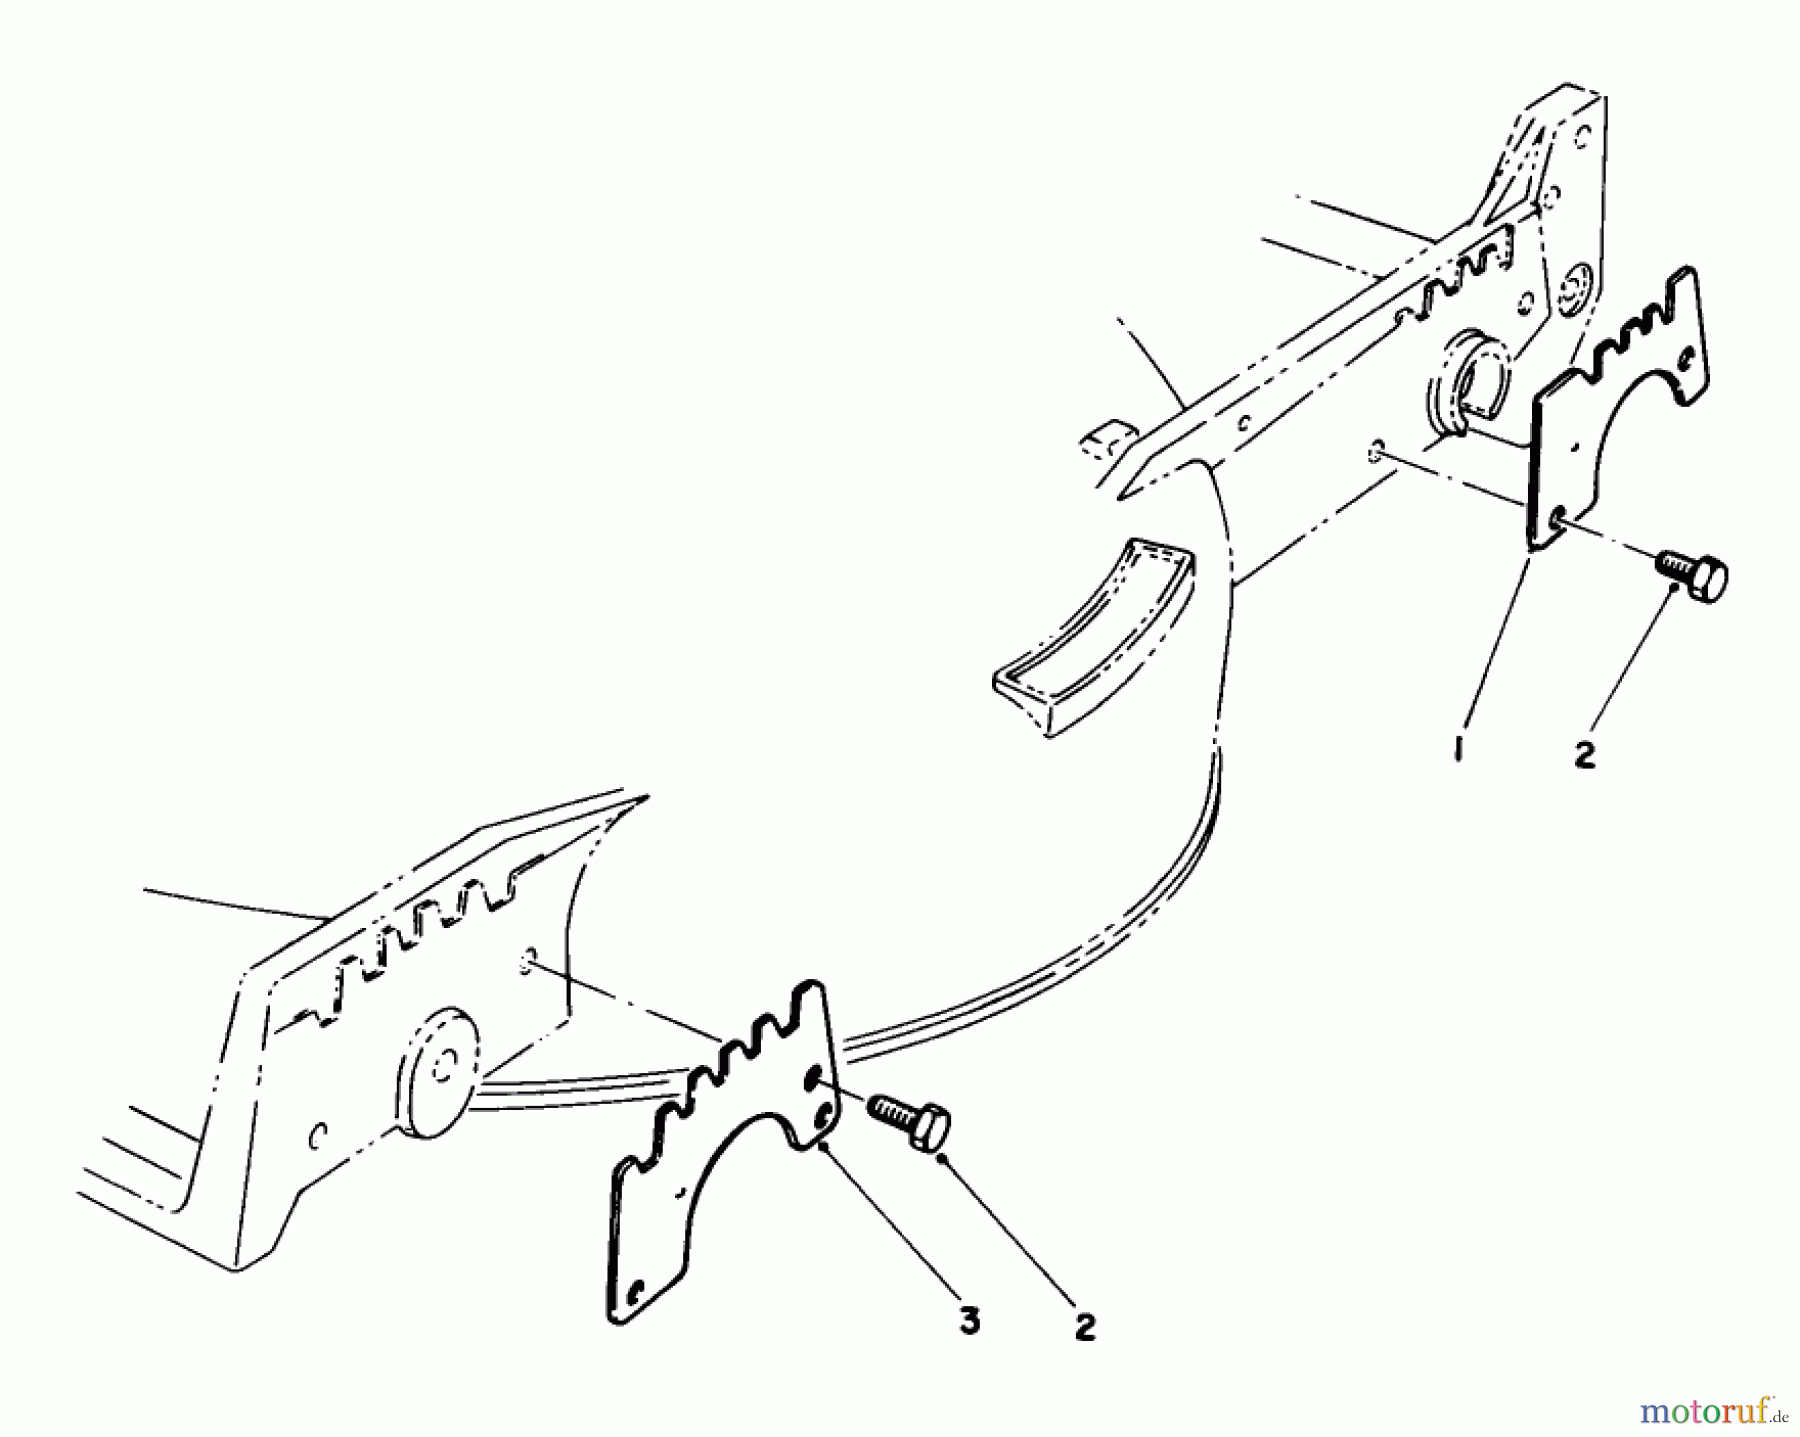  Toro Neu Mowers, Walk-Behind Seite 1 20210 - Toro Lawnmower, 1992 (2000001-2999999) WEAR PLATE MODEL NO. 49-4080 (OPTIONAL)